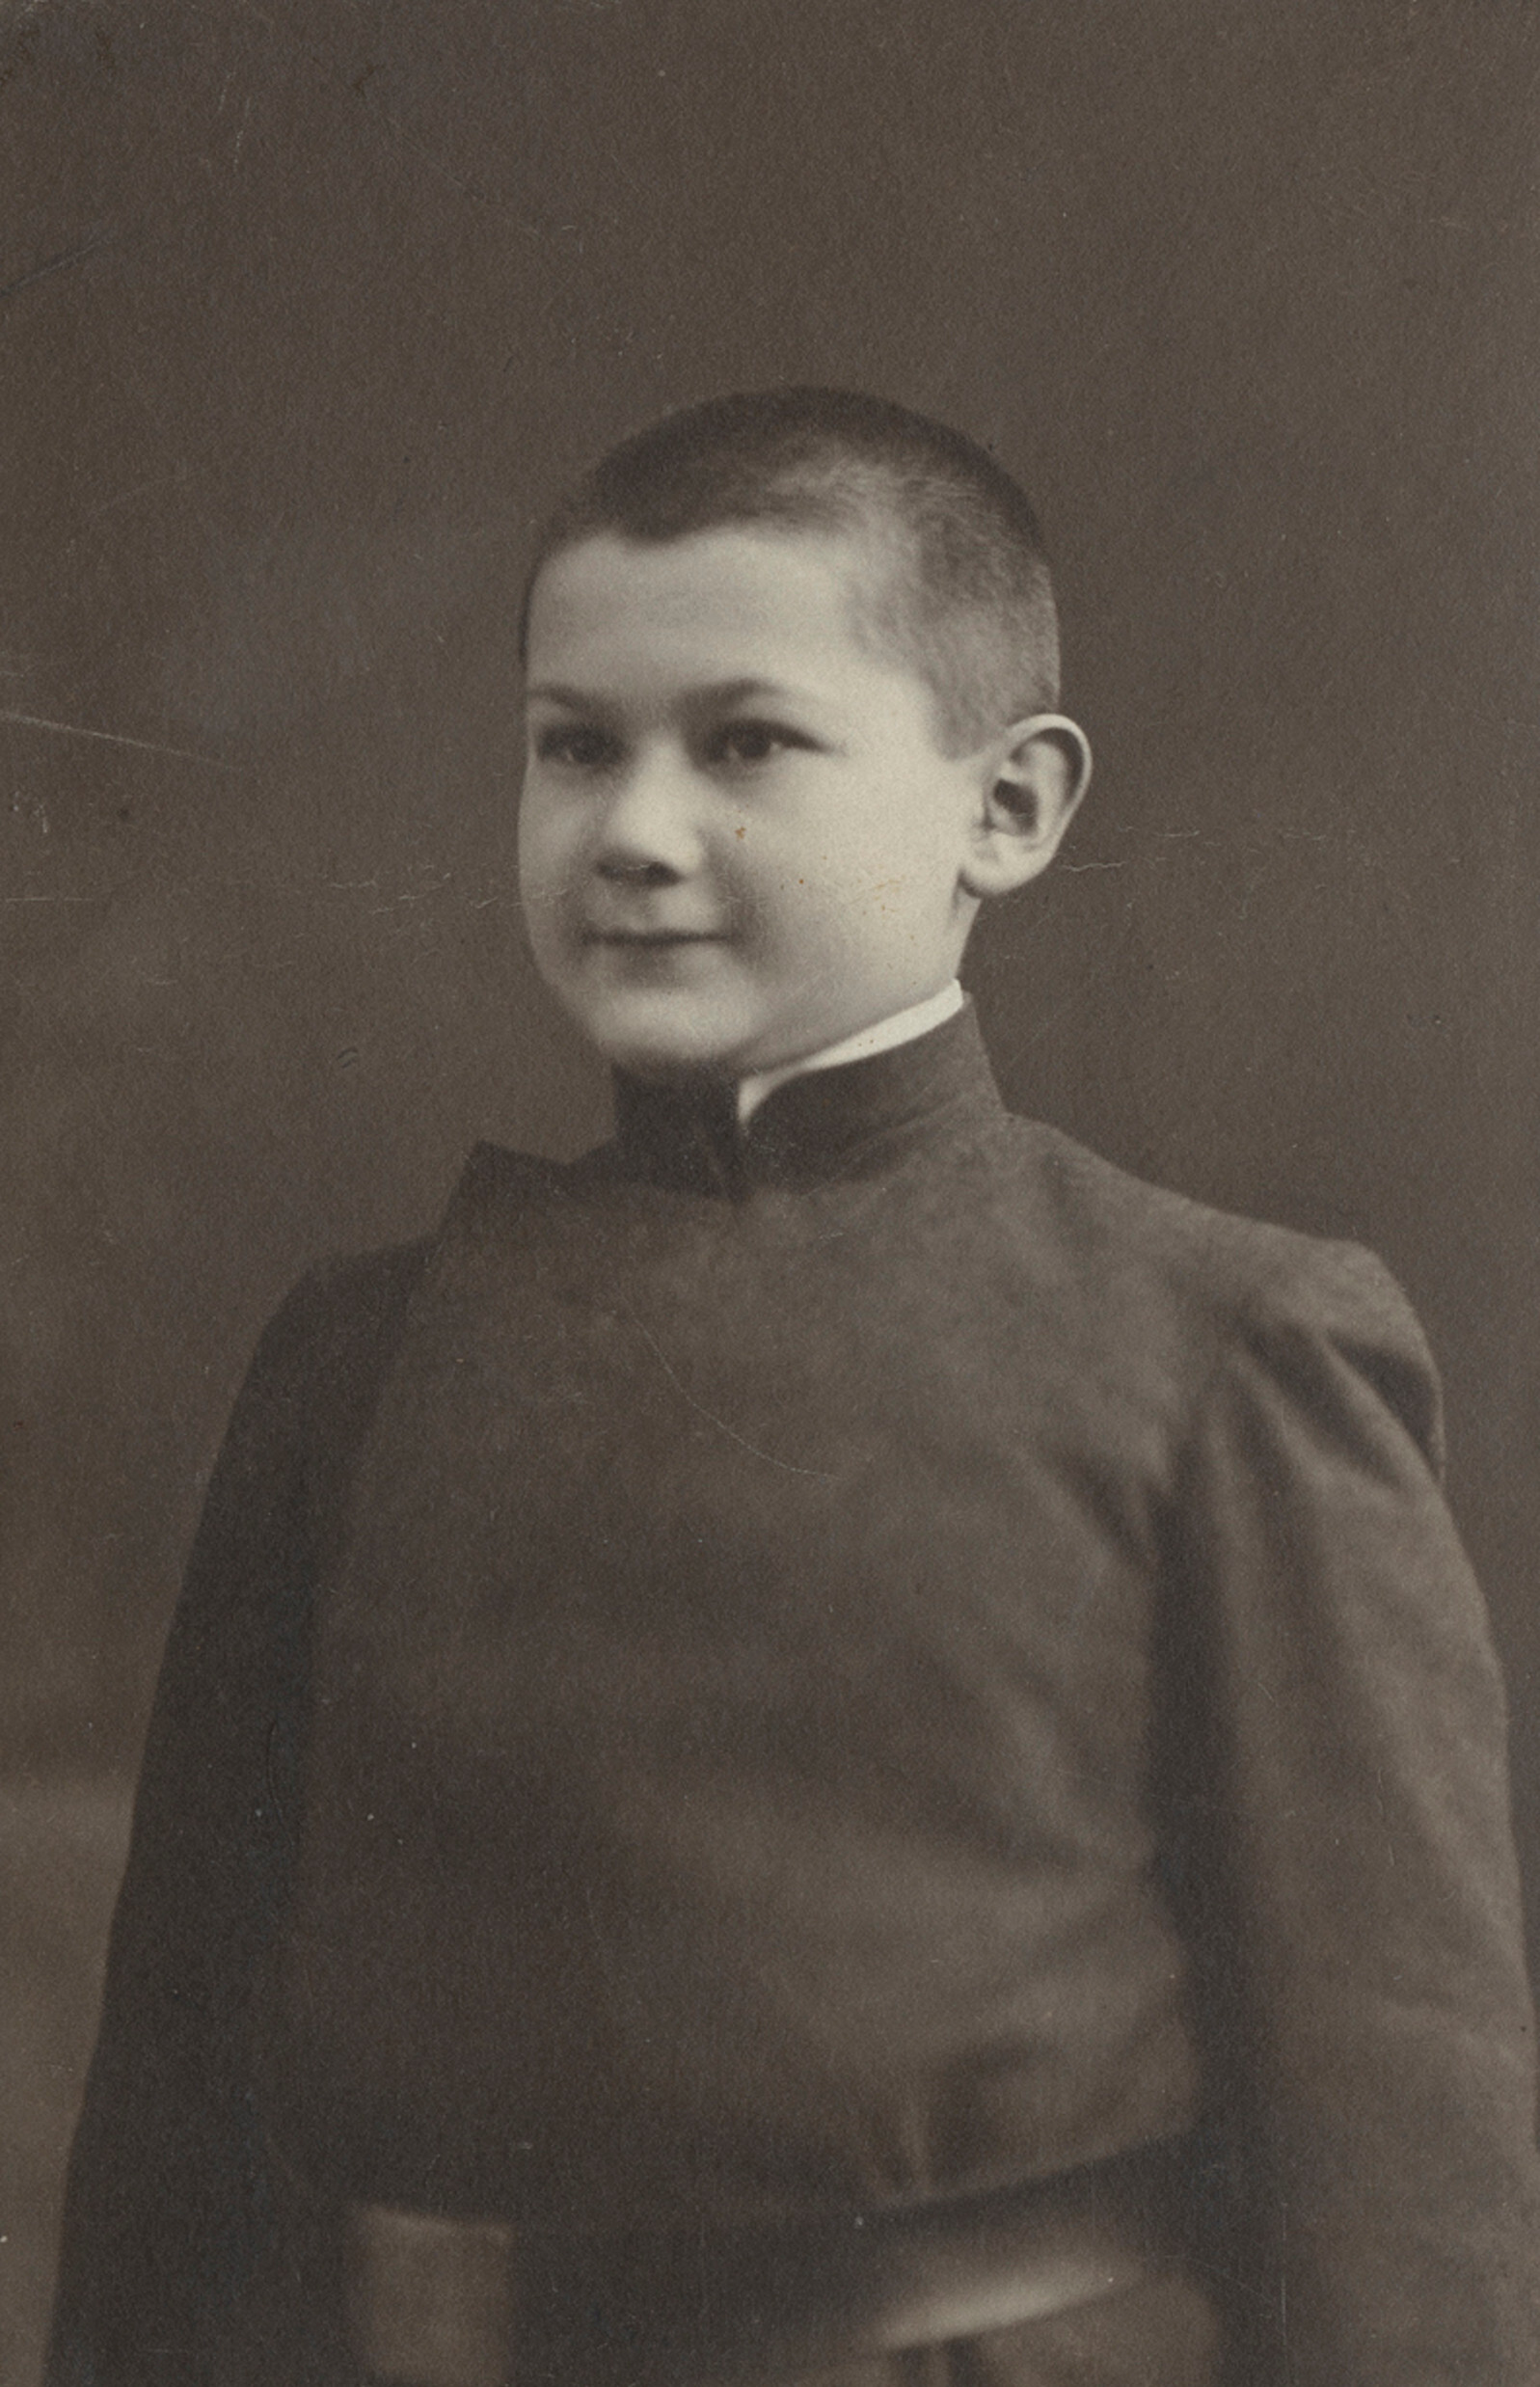 Роман Вишняк в школьной форме, Москва, ок. 1906 г. Фотограф Роман Вишняк